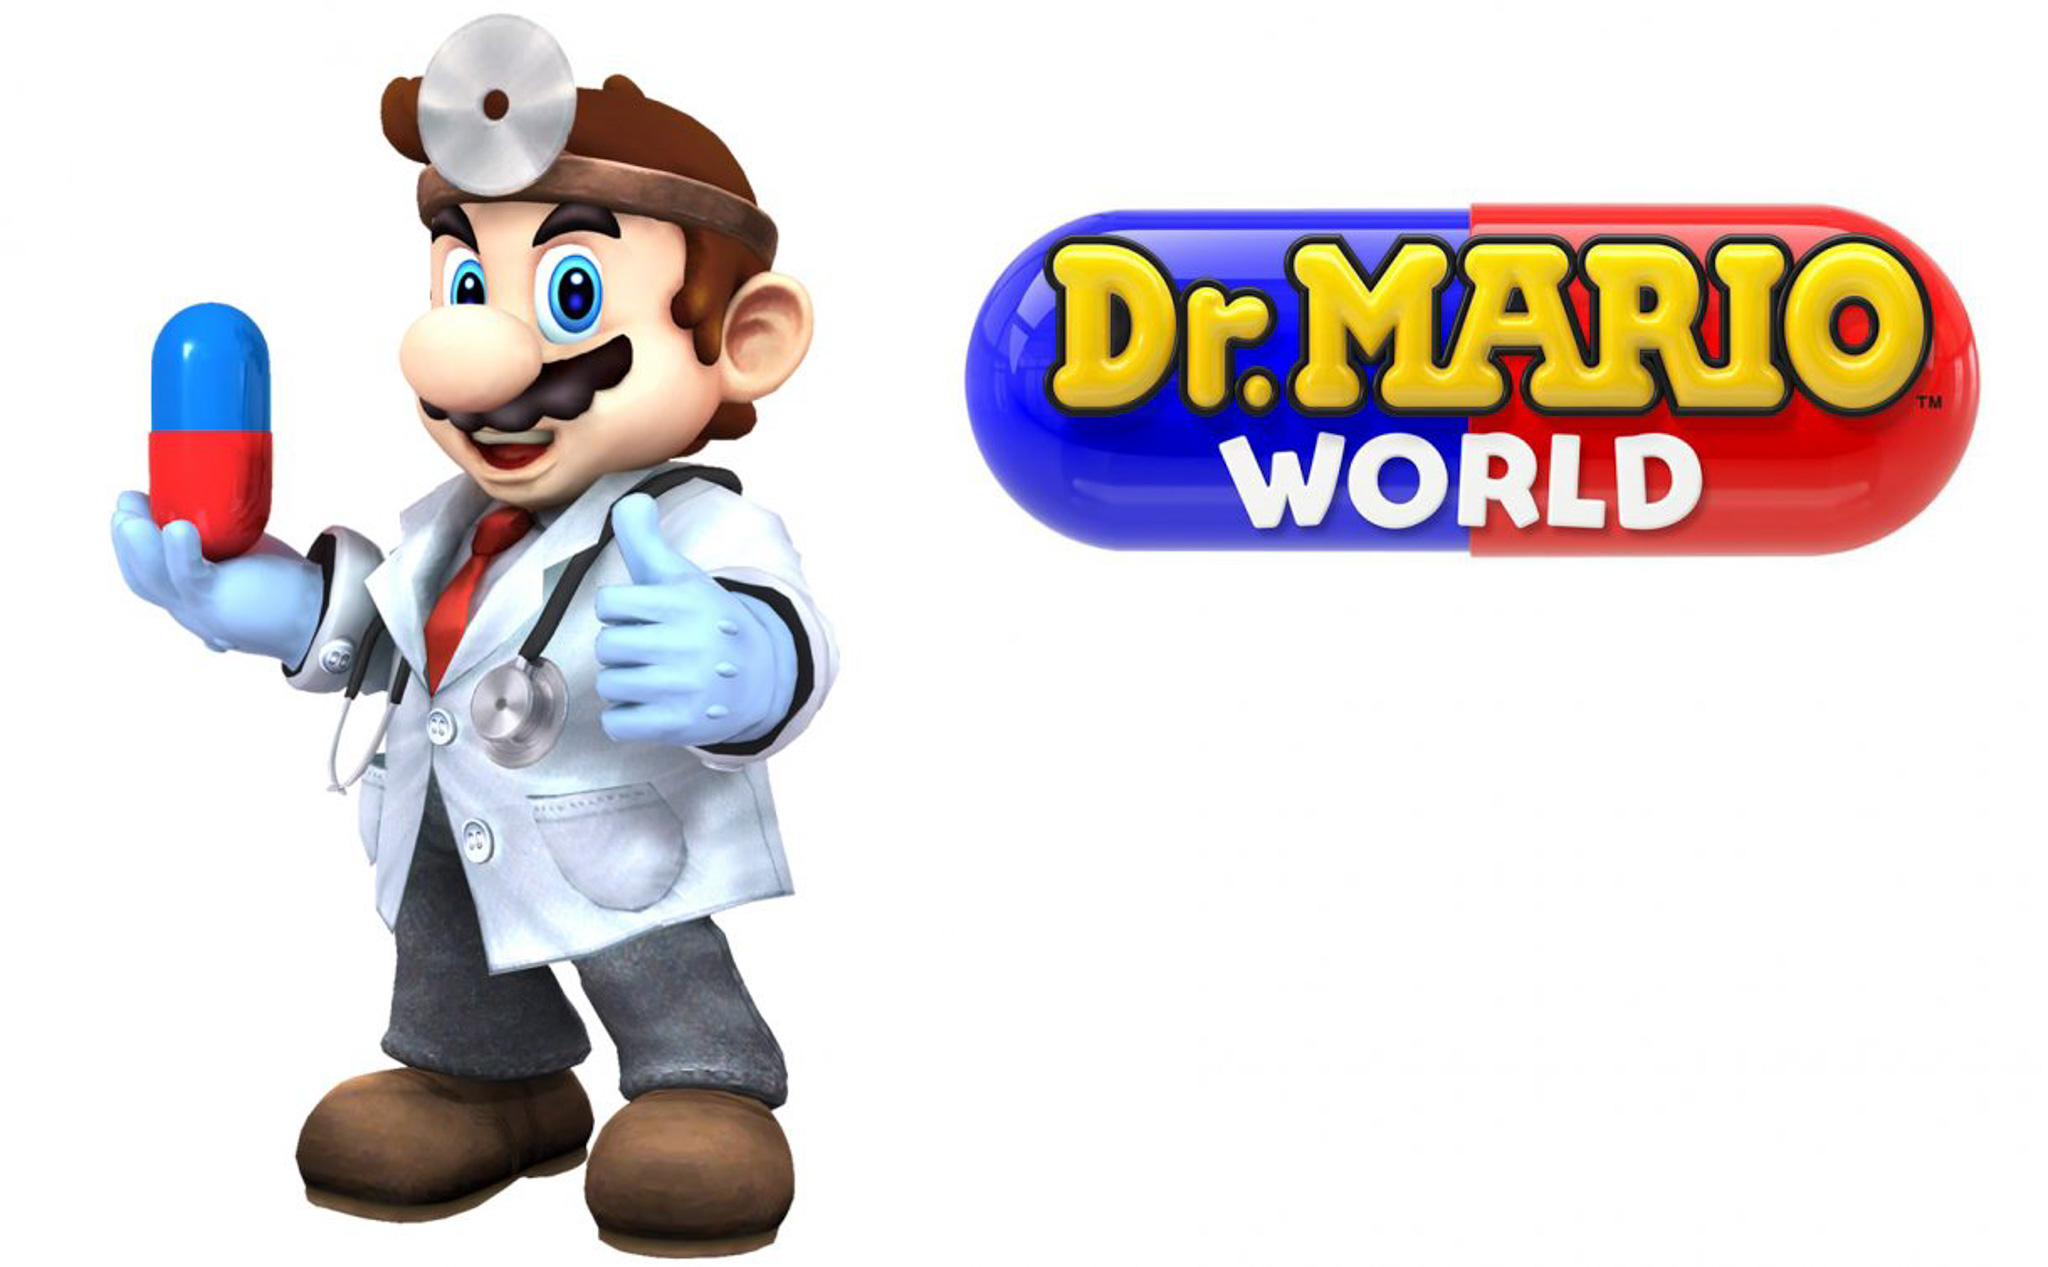 Nintendo sẽ ra mắt game Dr. Mario World dành cho smartphone trong năm 2019